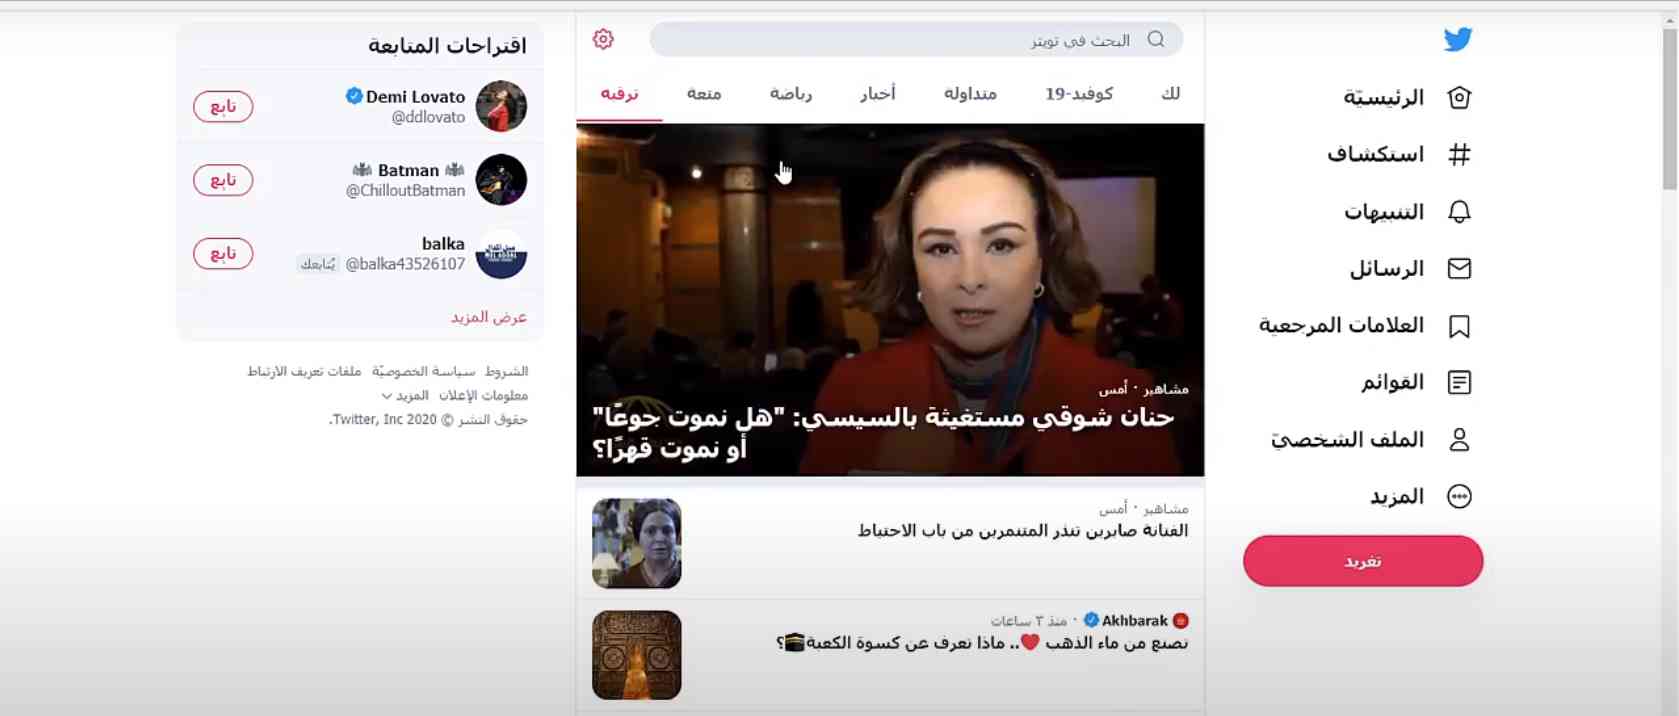 تحميل برنامج تويتر 2021 للكمبيوتر Twitter عربي للهاتف مجانا 3